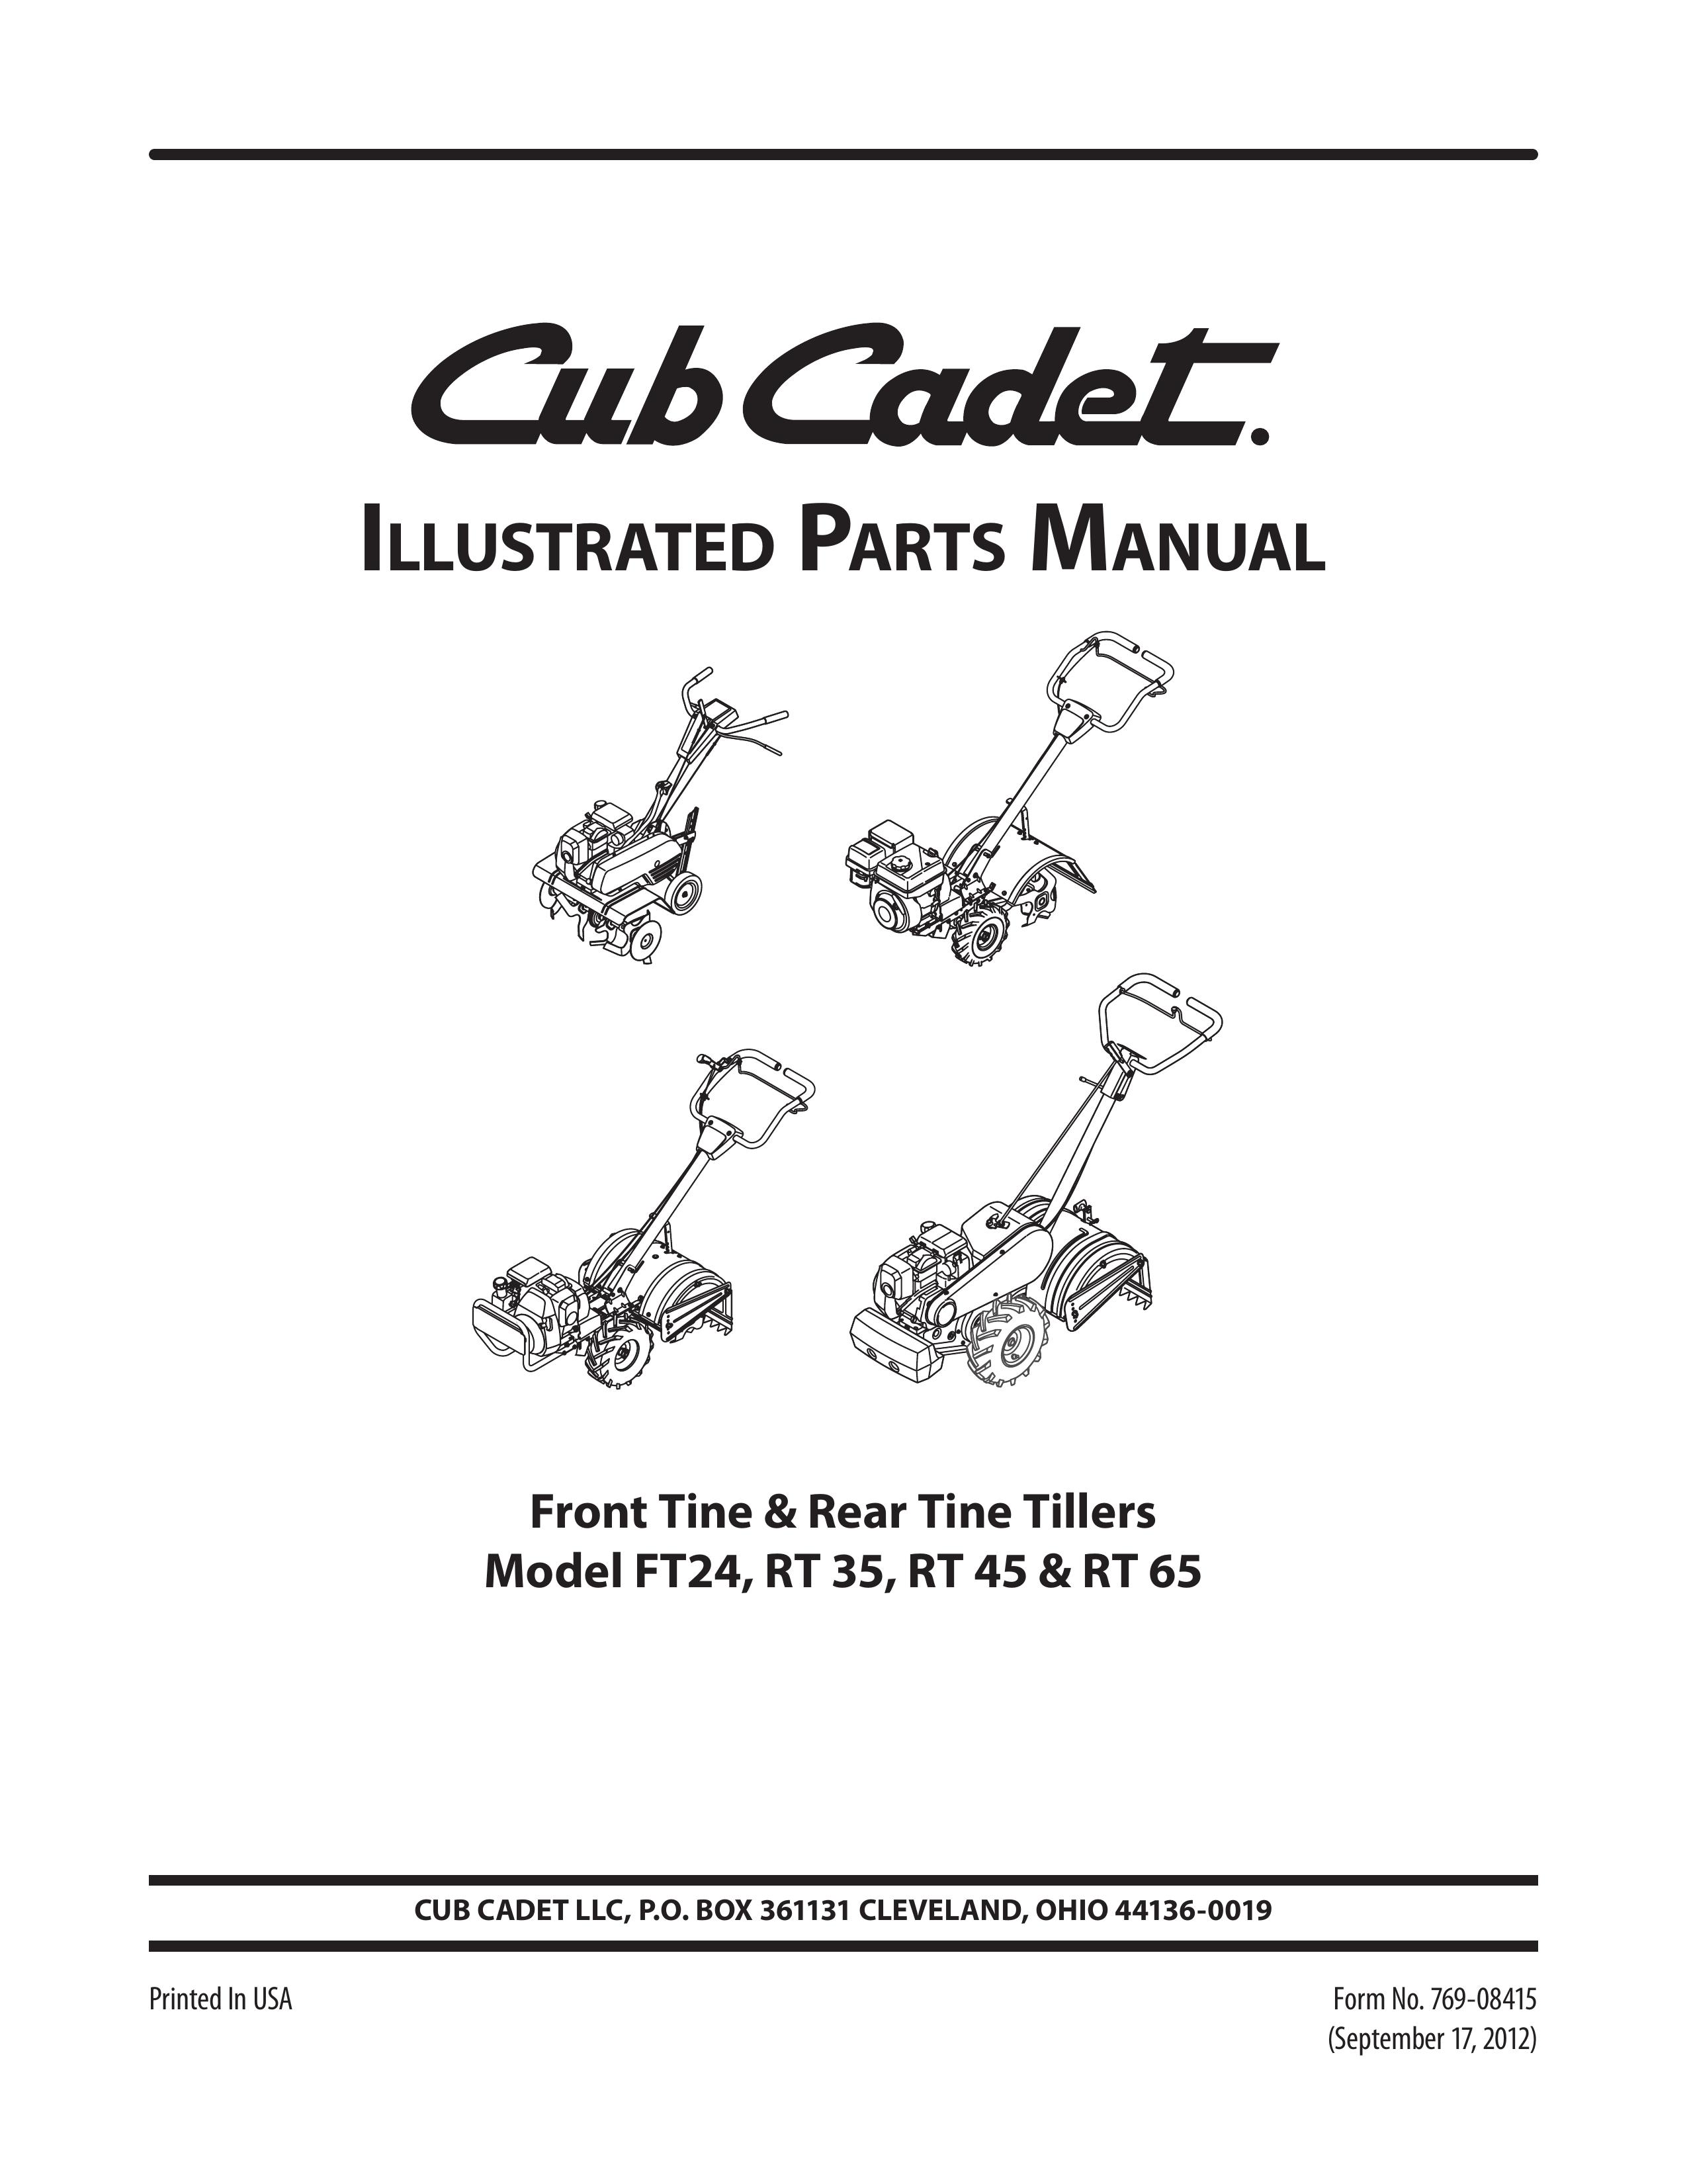 Cub Cadet FT24 Tiller User Manual